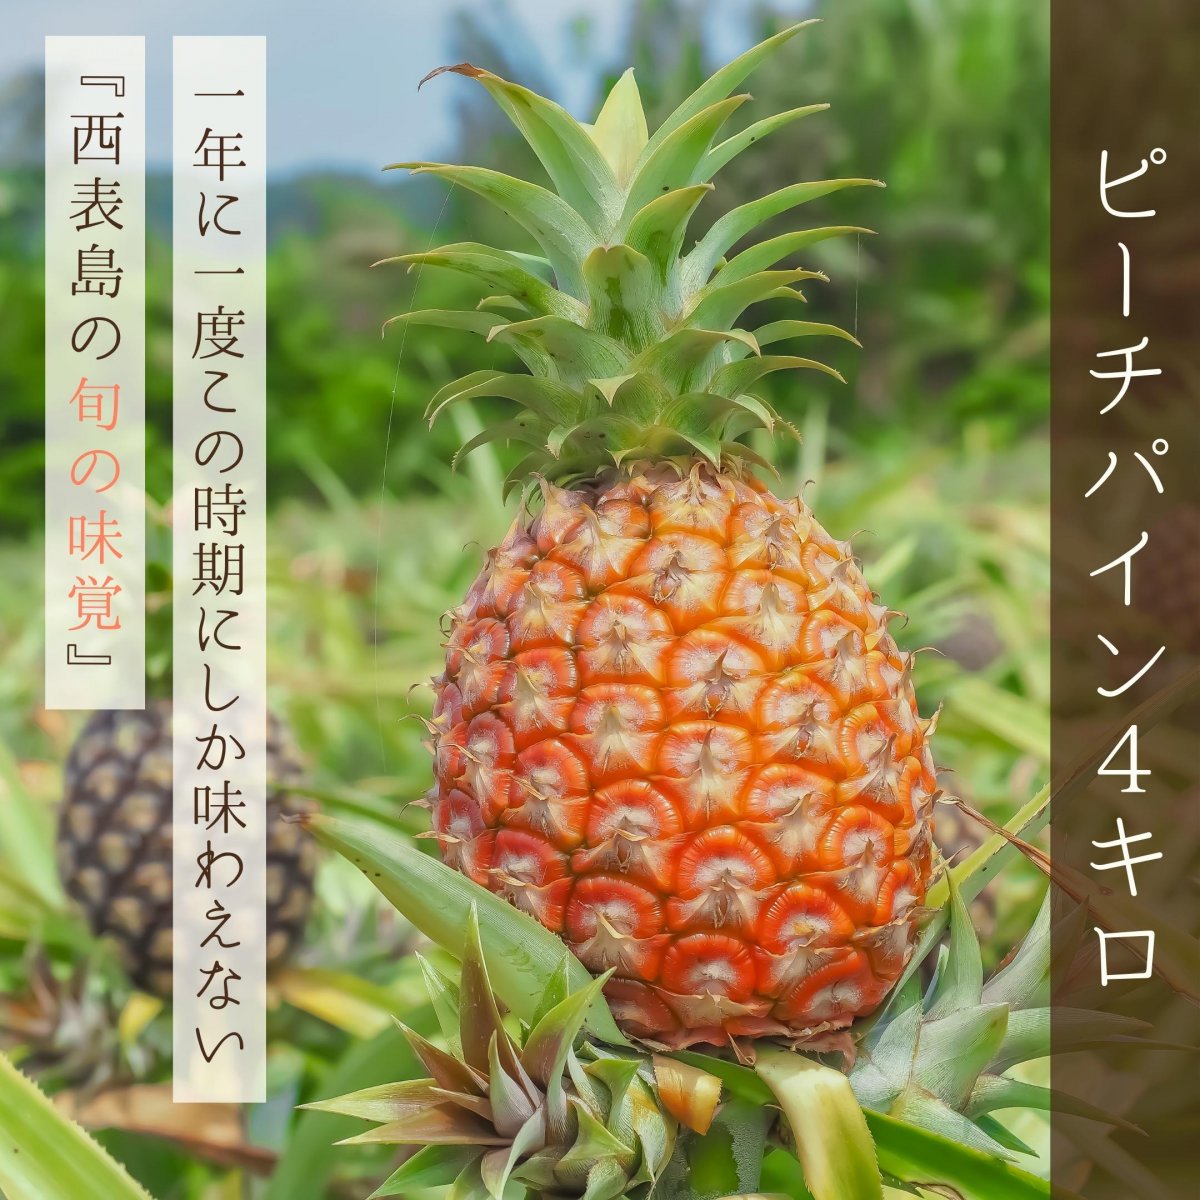 【４Kg】西表島産ピーチパイン 〜パイナップルなのに『ほんの〜り桃の香り』がする不思議なパイナップル〜